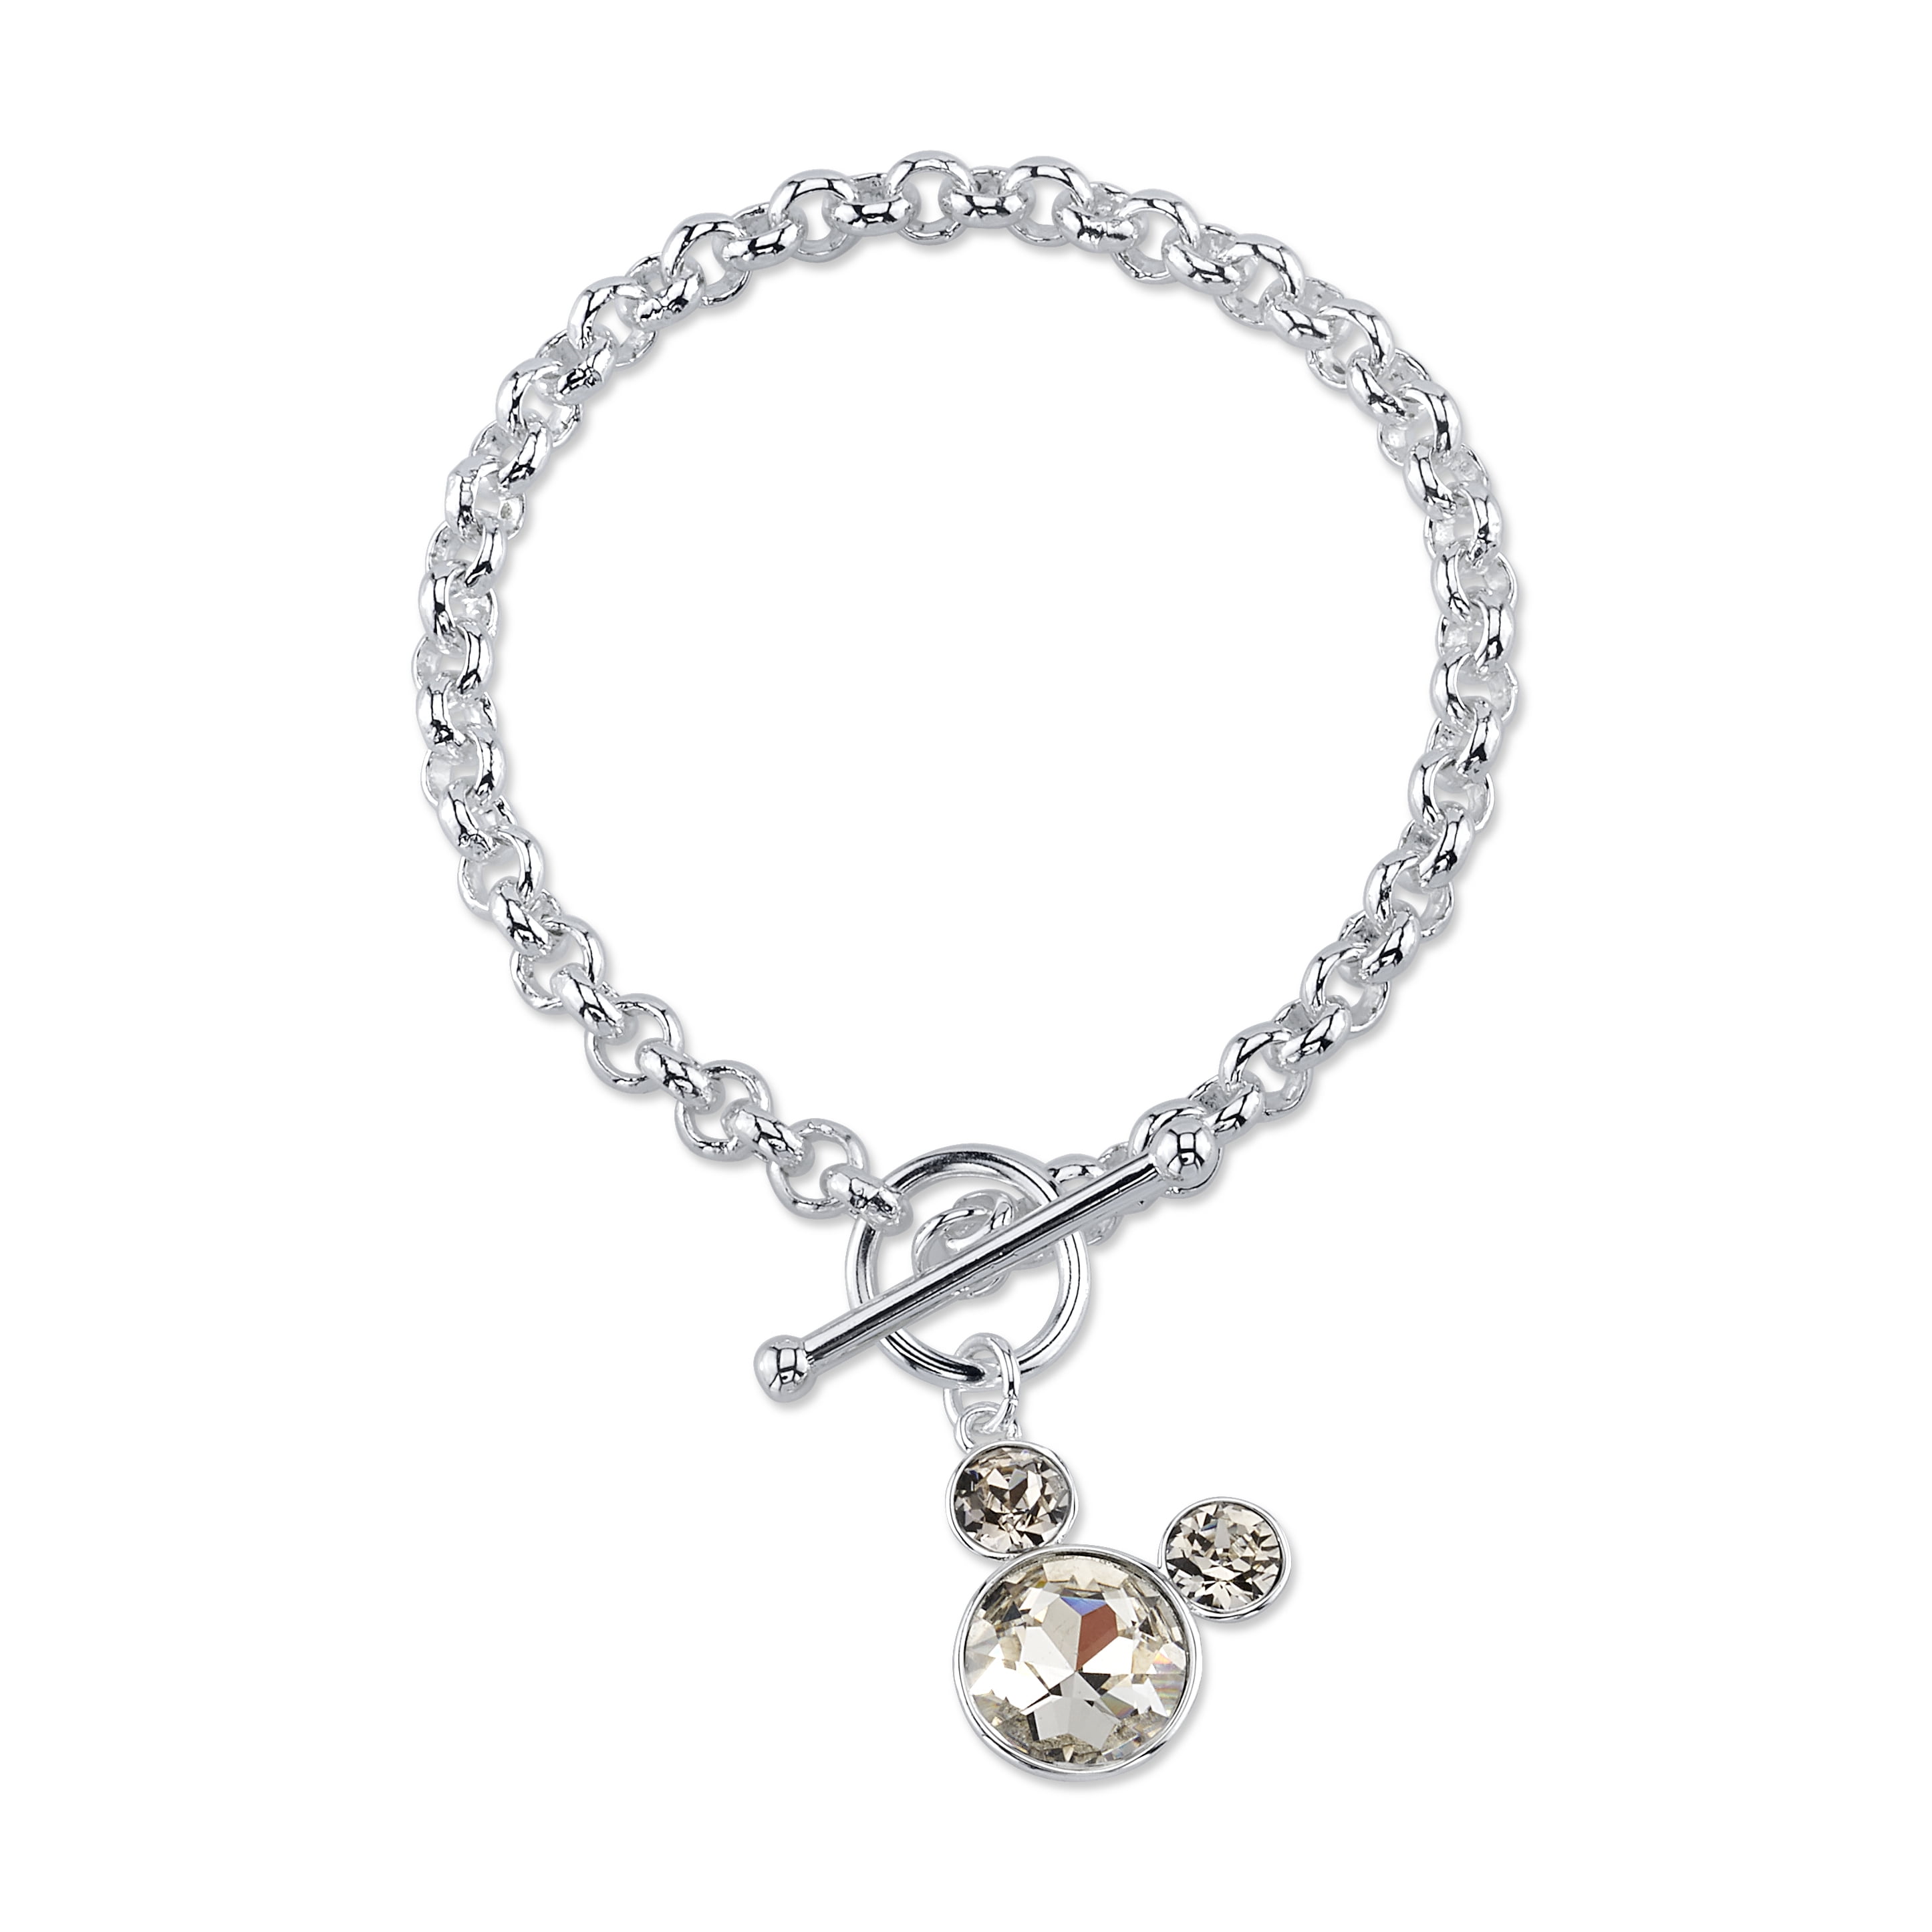 Swarovski Minnie Mouse Charm Bracelet | shopDisney